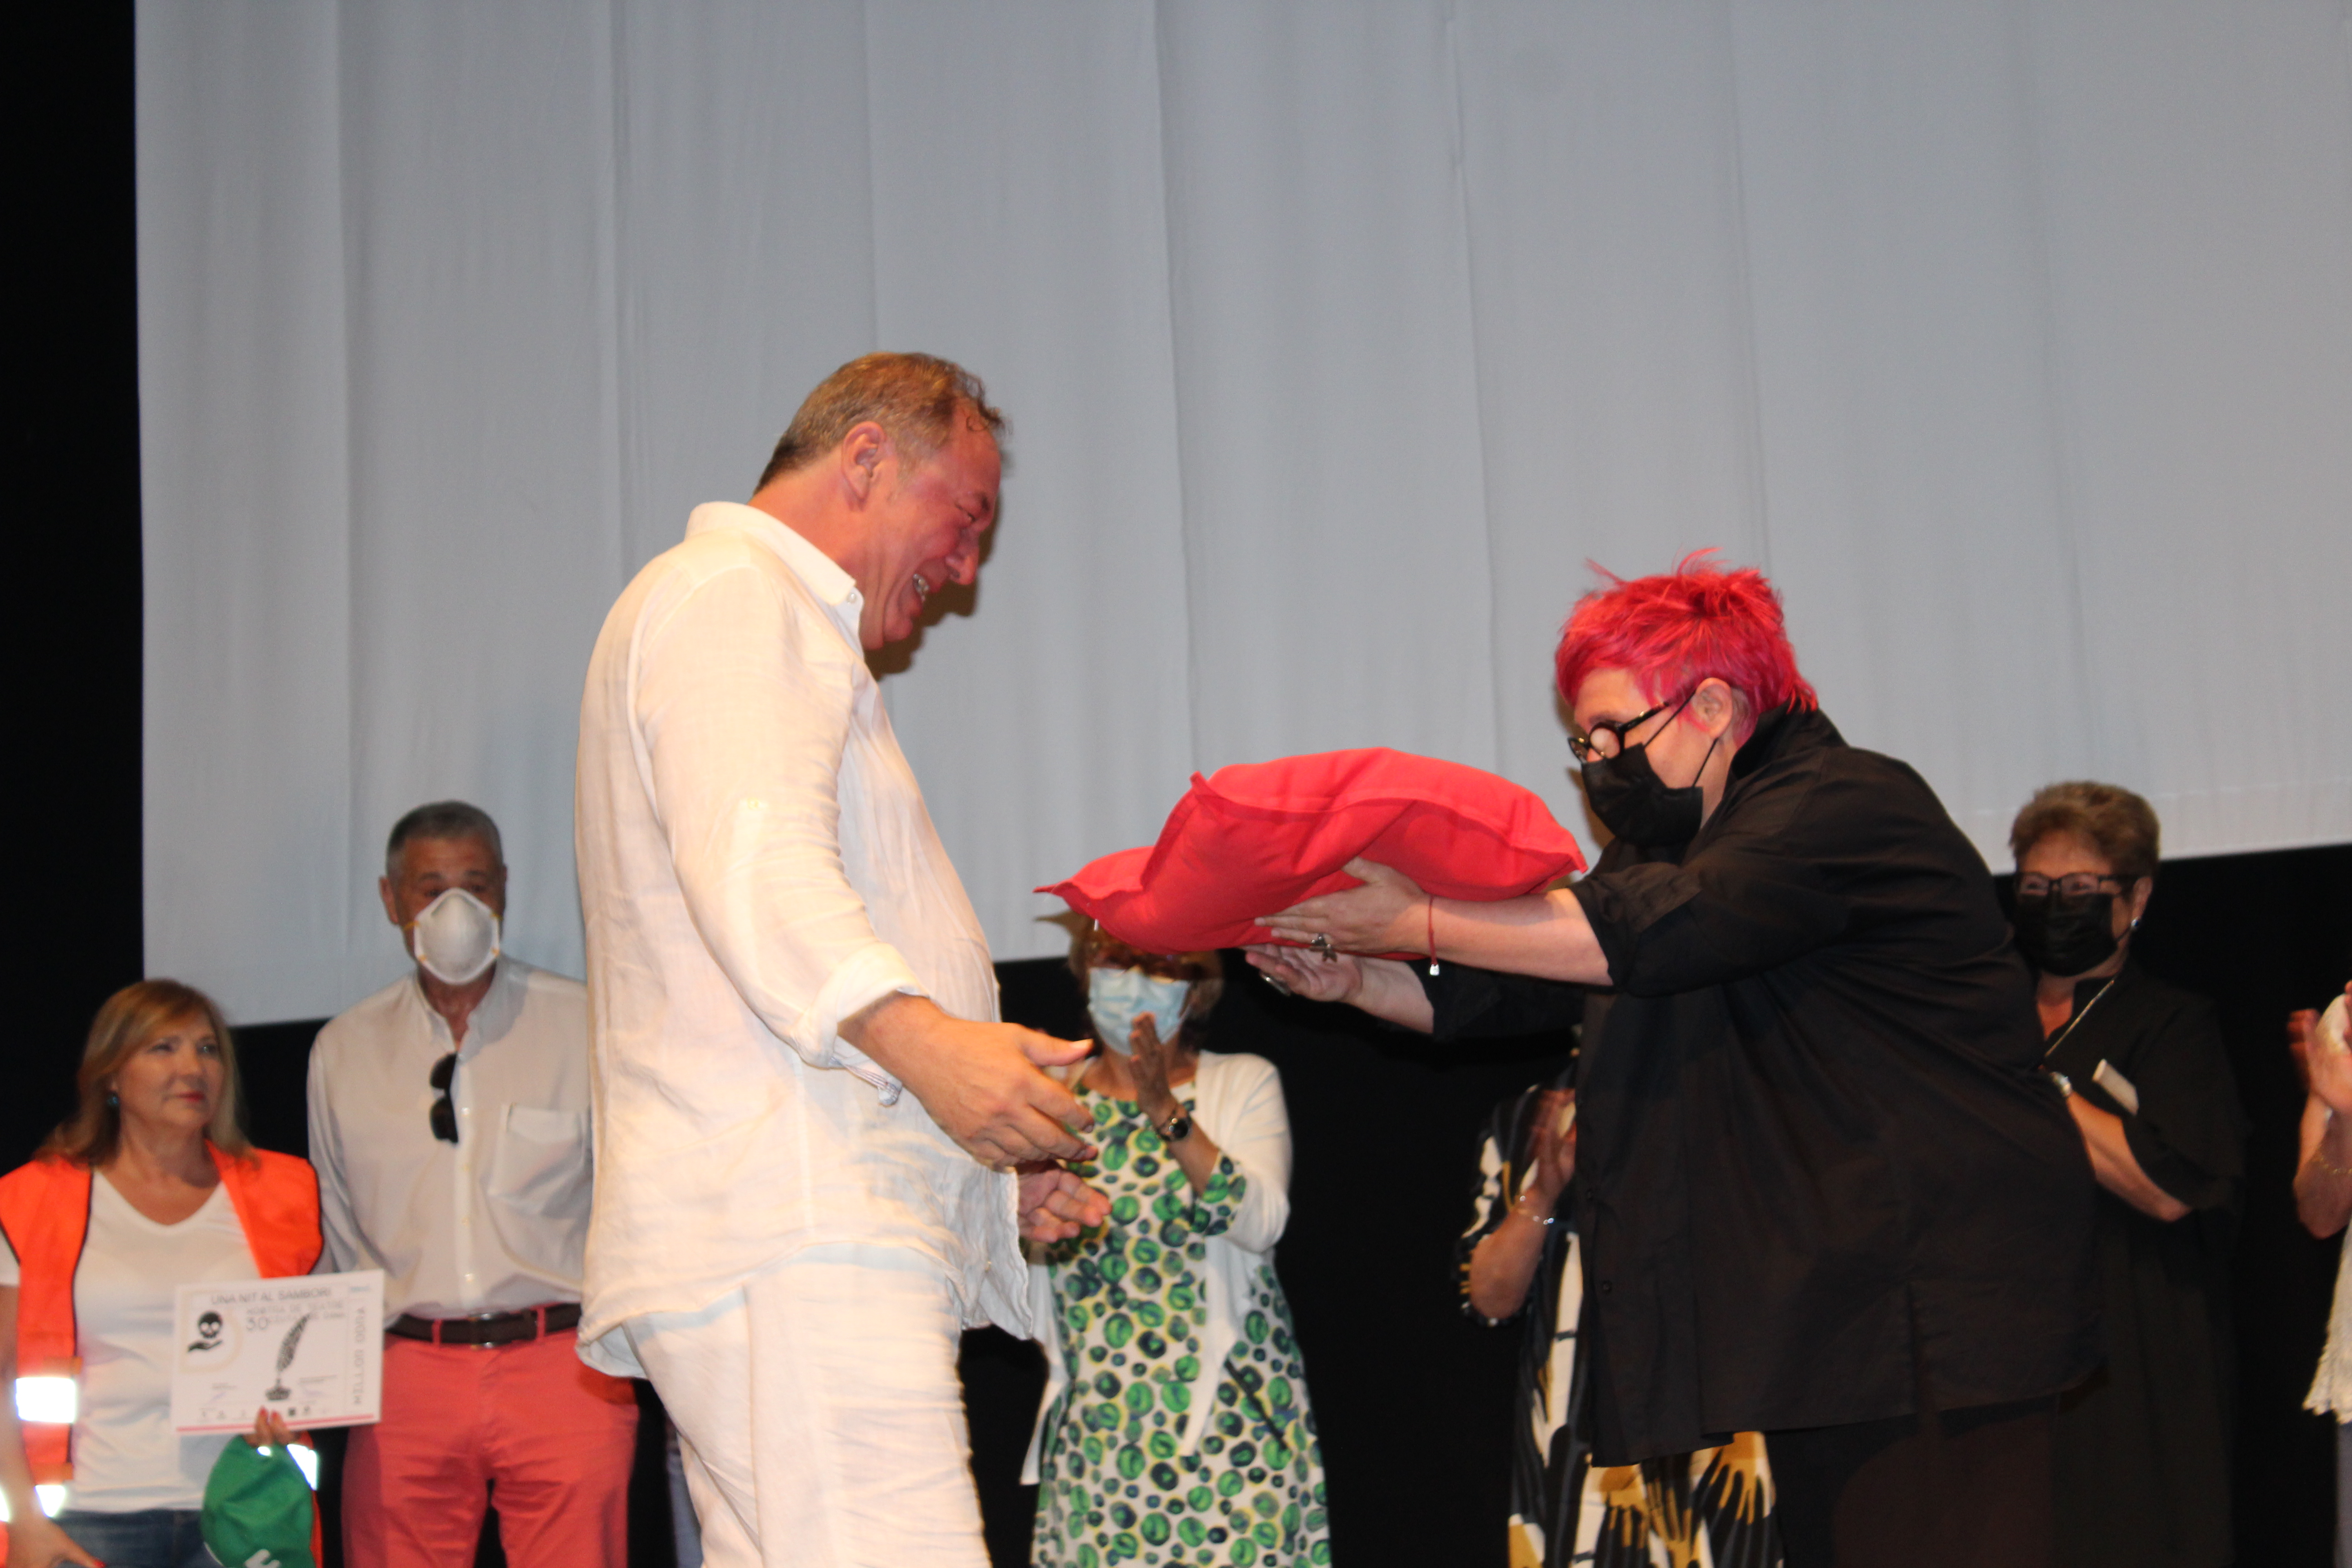 "Una nit al sambori", dels deniers Desficaci Teatre, guanya el premi del públic &#...